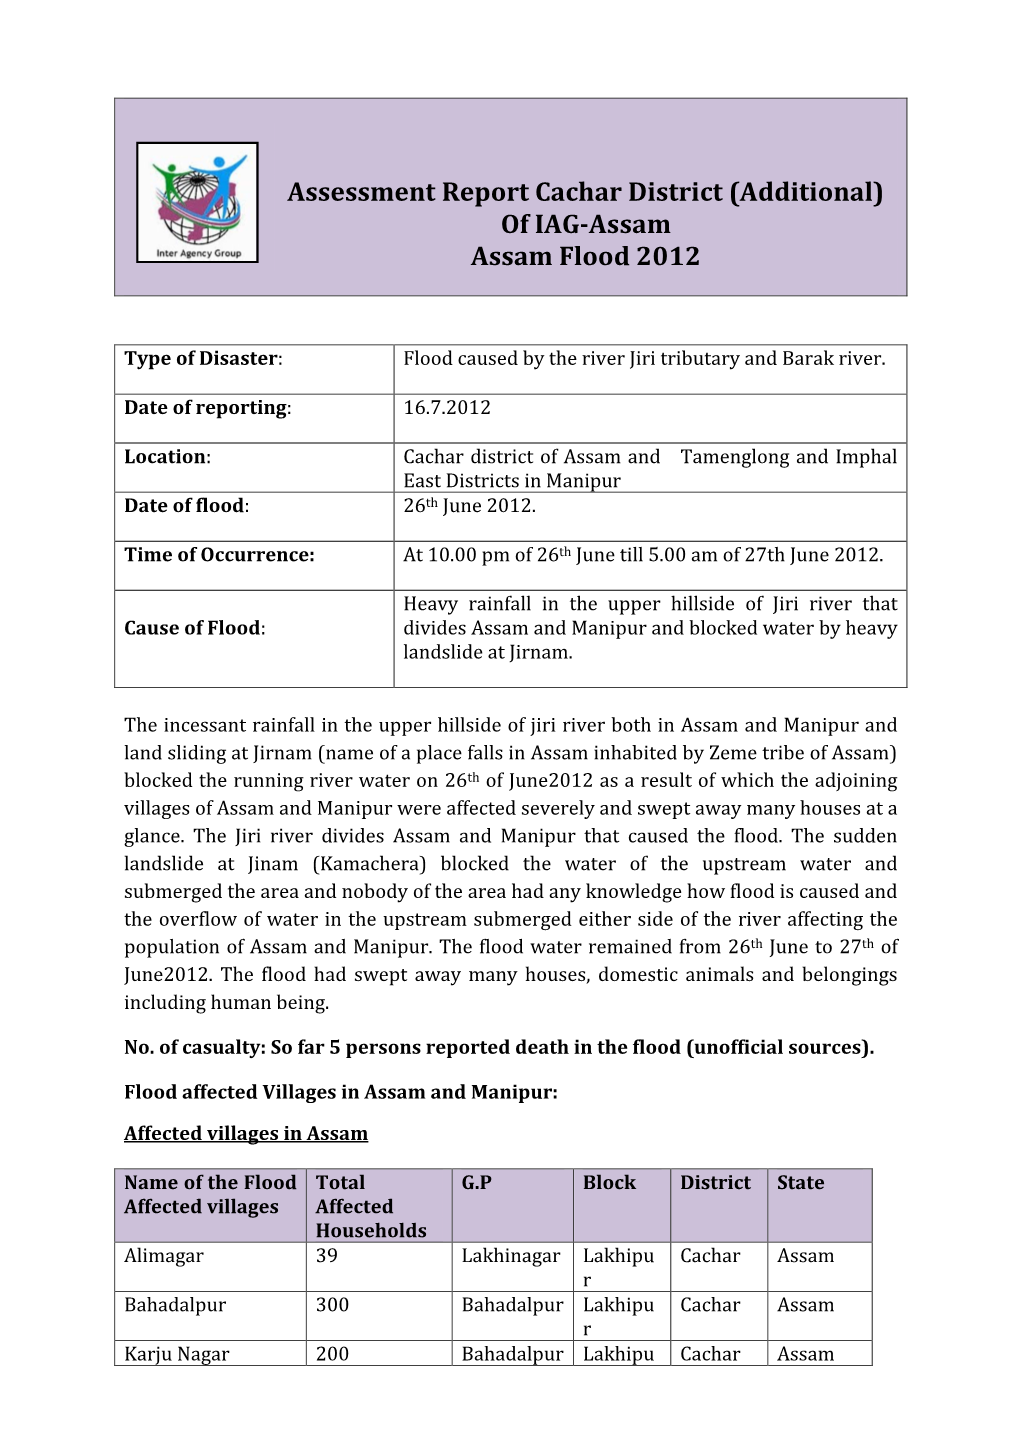 Assessment Report Cachar District (Additional) of IAG-Assam Assam Flood 2012